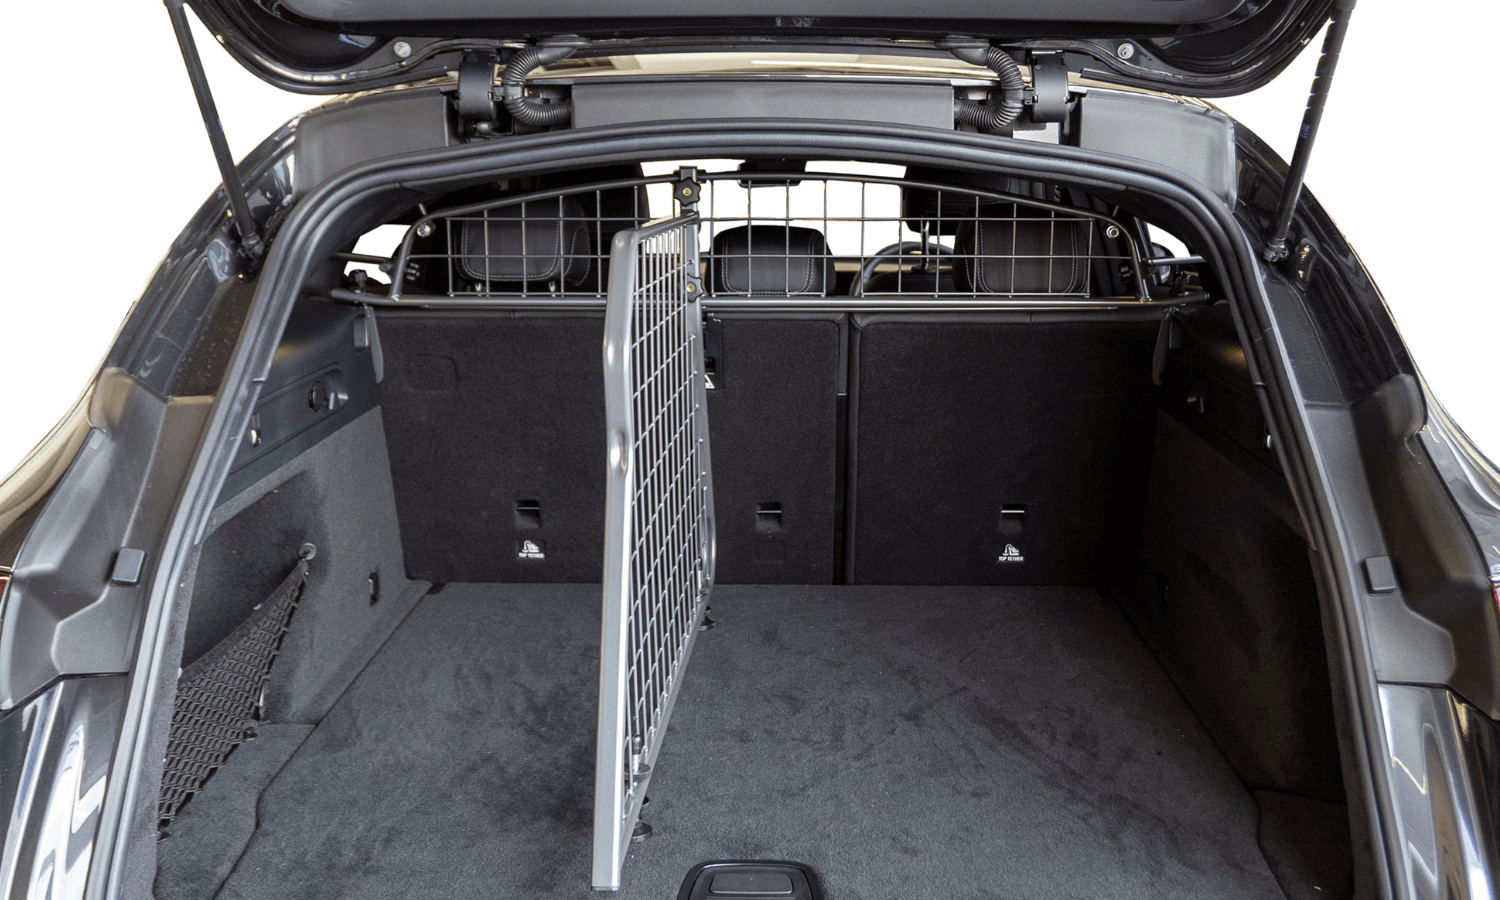 Auf dem Foto sieht man den Travall Guard Hundegitter und Travall Divider Kofferraumteiler für Mercedes EQC. Die Trenngitter sichern Hunde im Auto. © Travall